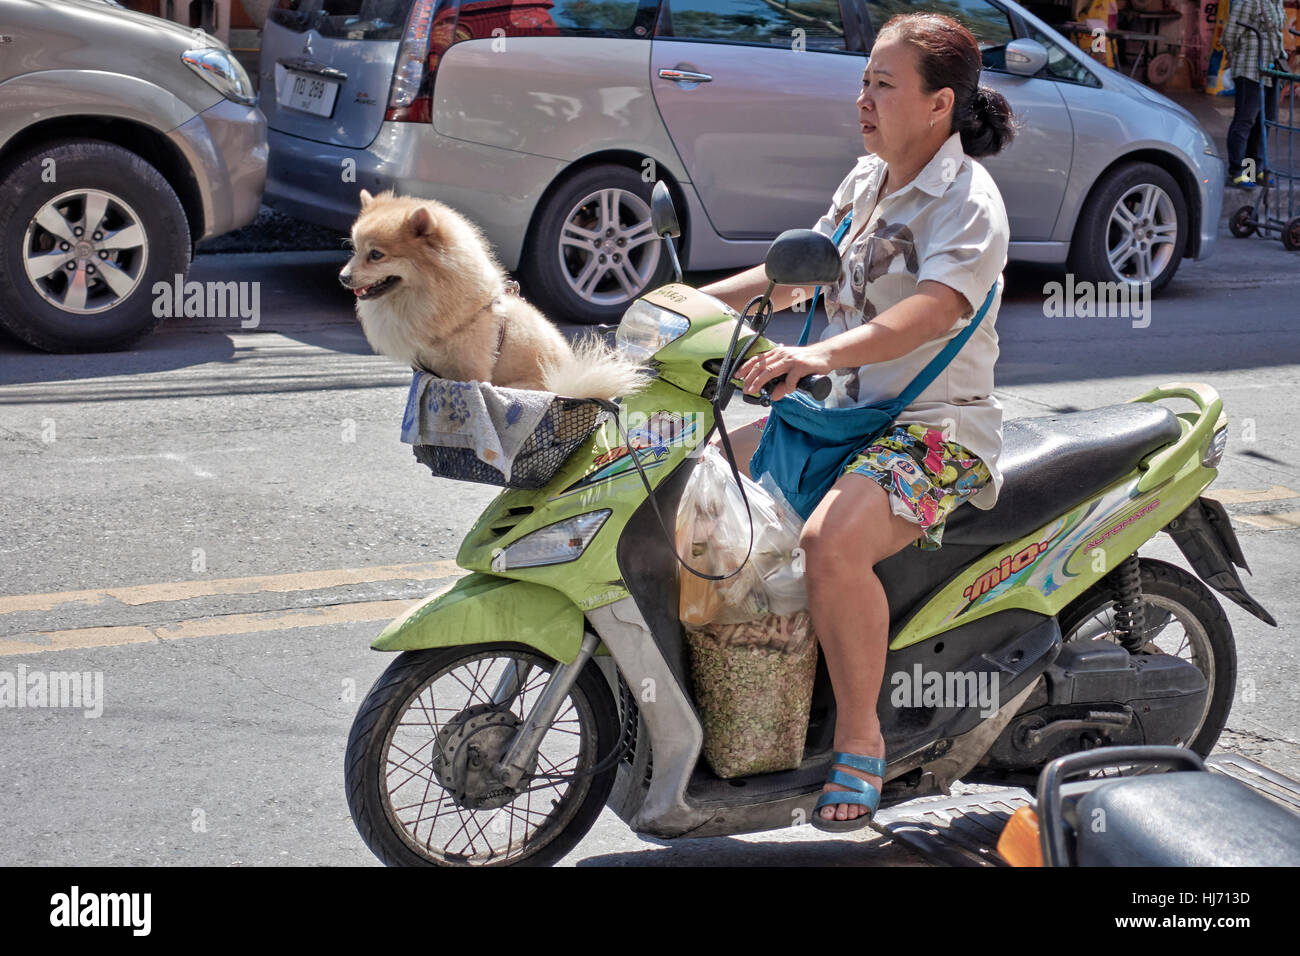 Frau, die ihrem Hund auf einem Motorrad zu transportieren Stockfotografie -  Alamy